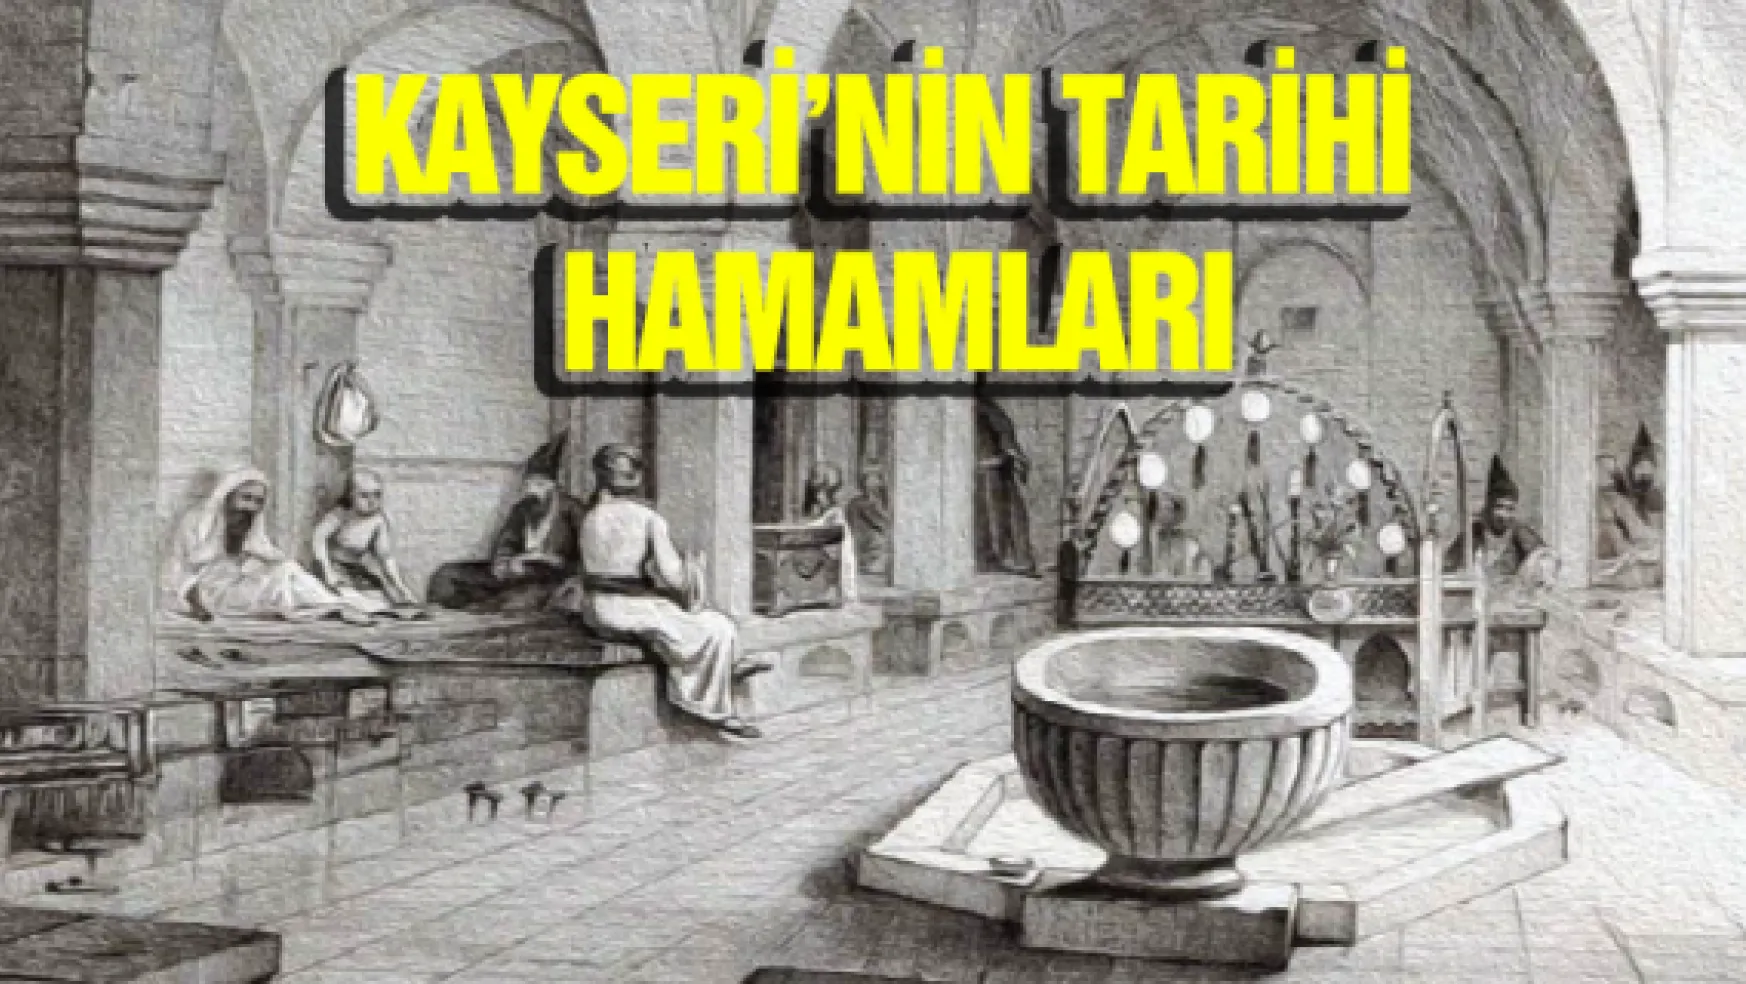 Kayseri'nin tarihi hamamları